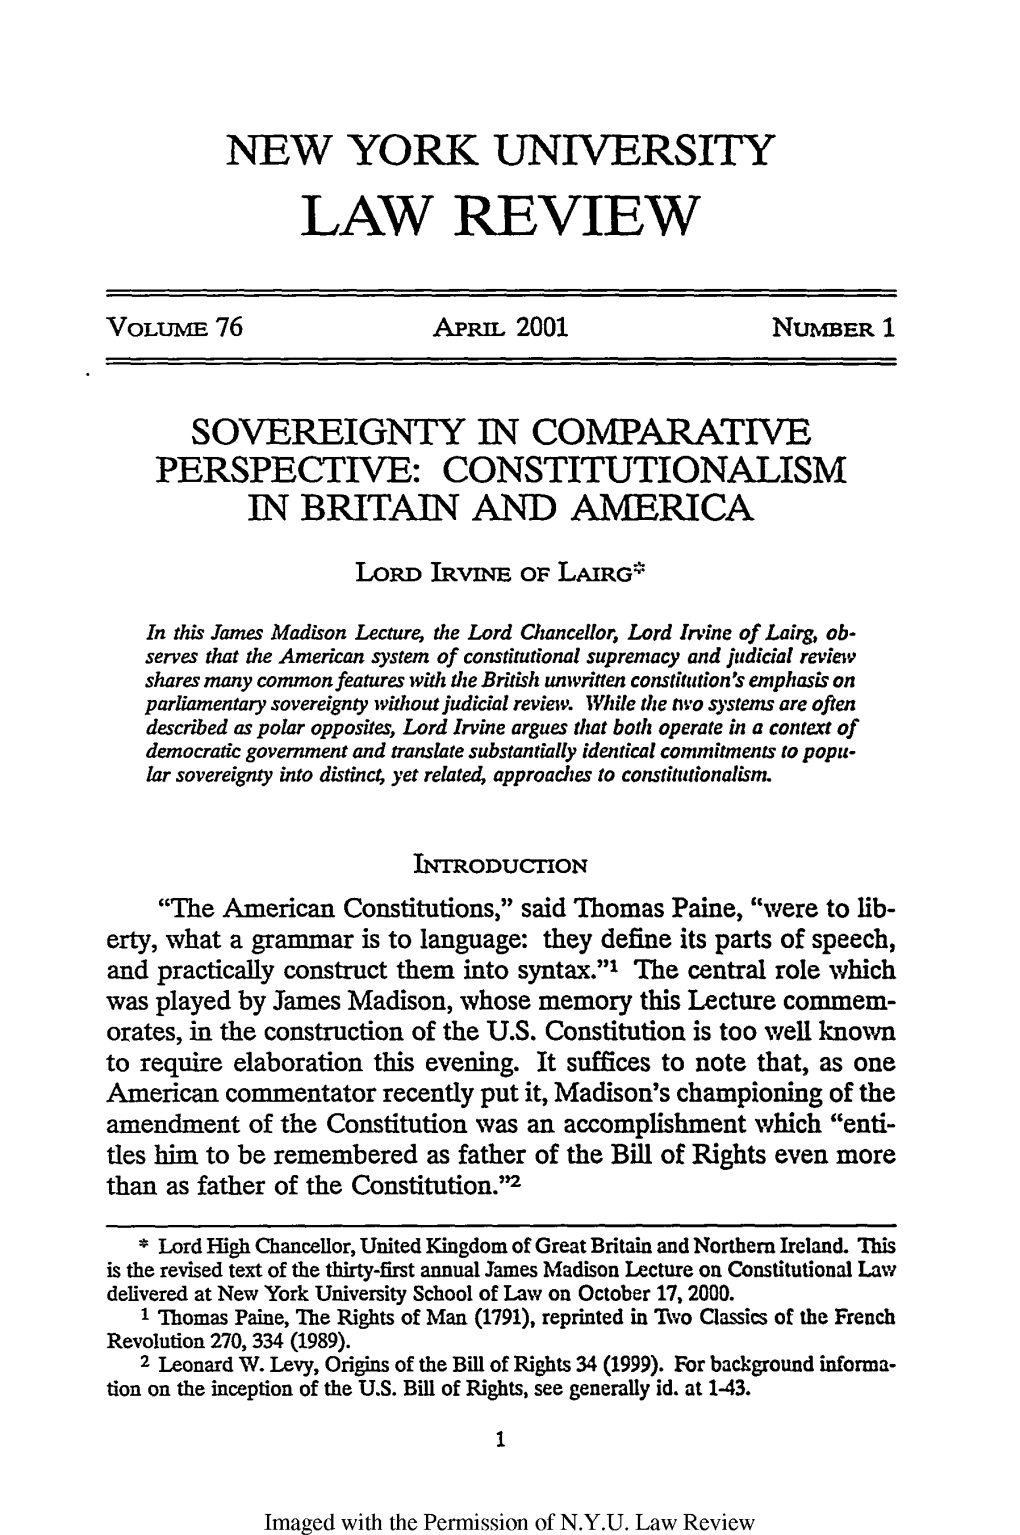 Constitutionalism in Britain and America